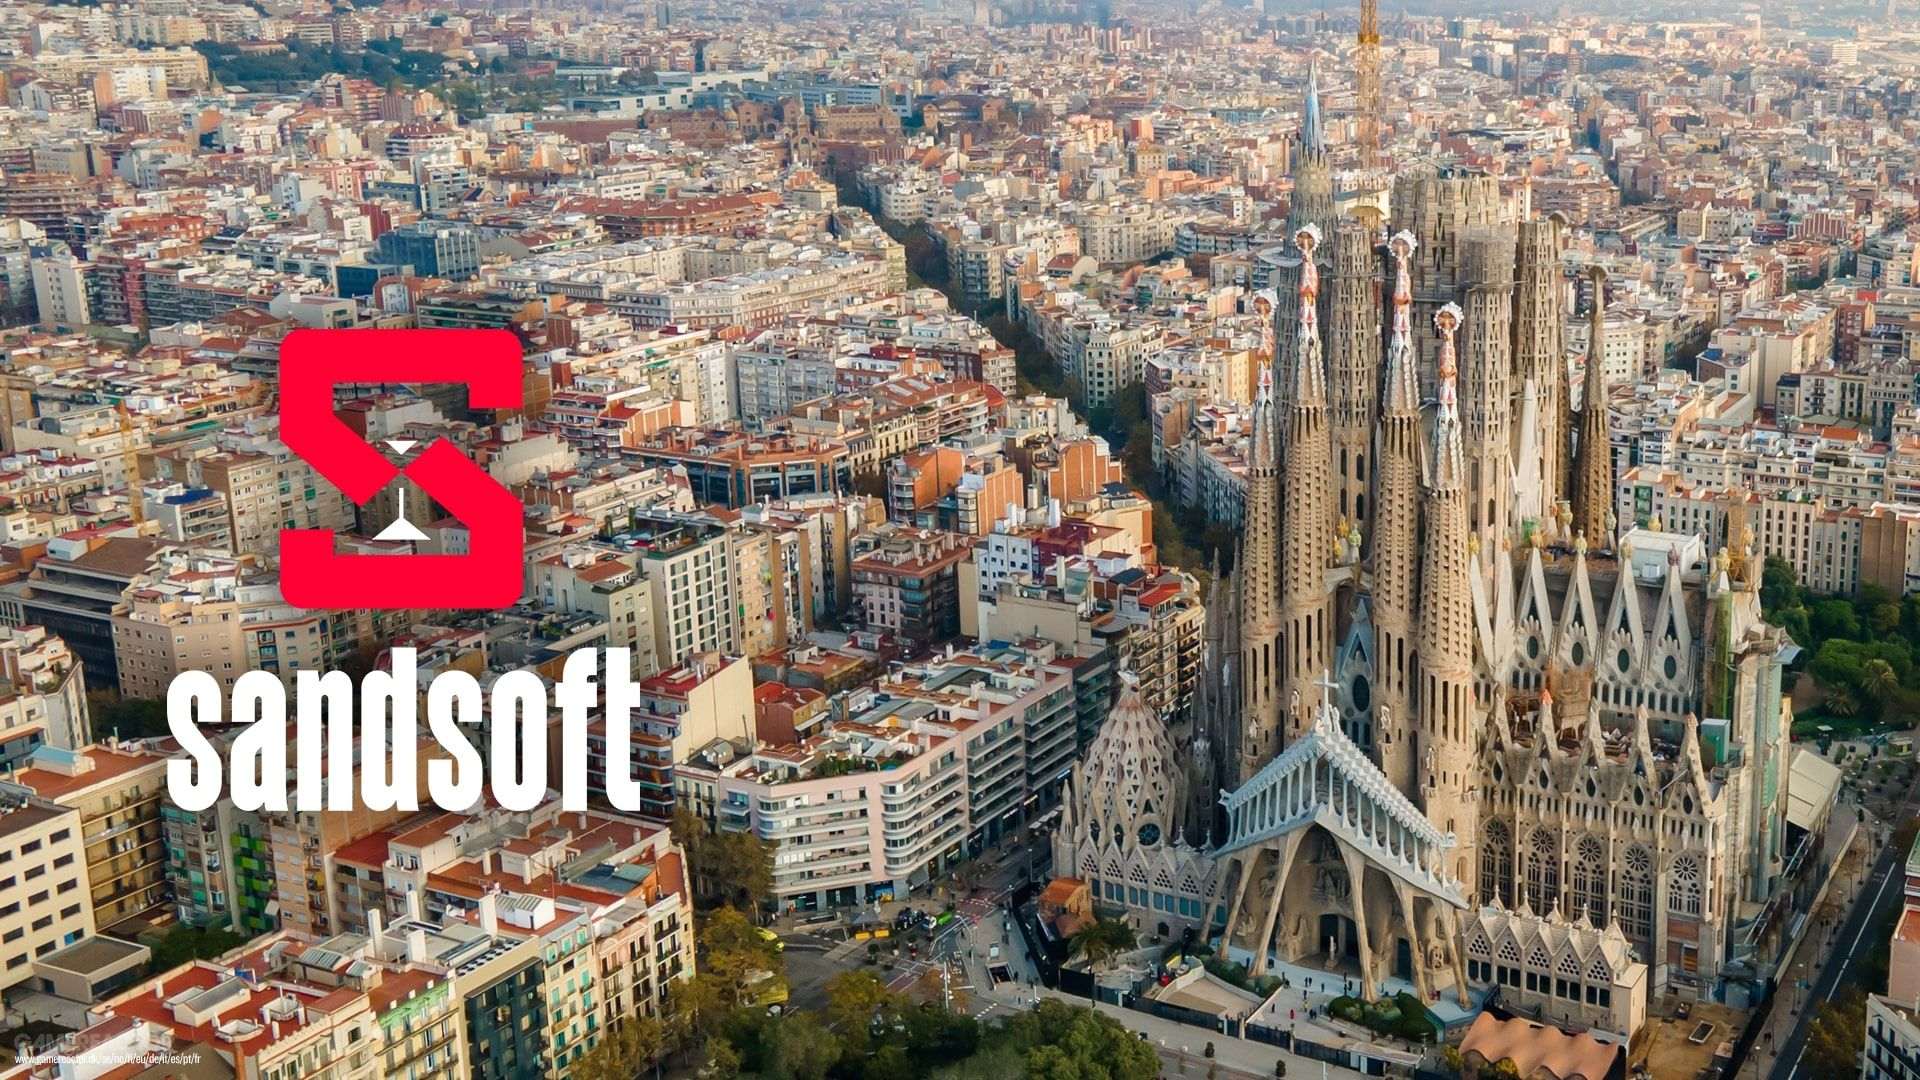 Sandsoft instal·larà el seu quarter general europeu a Barcelona